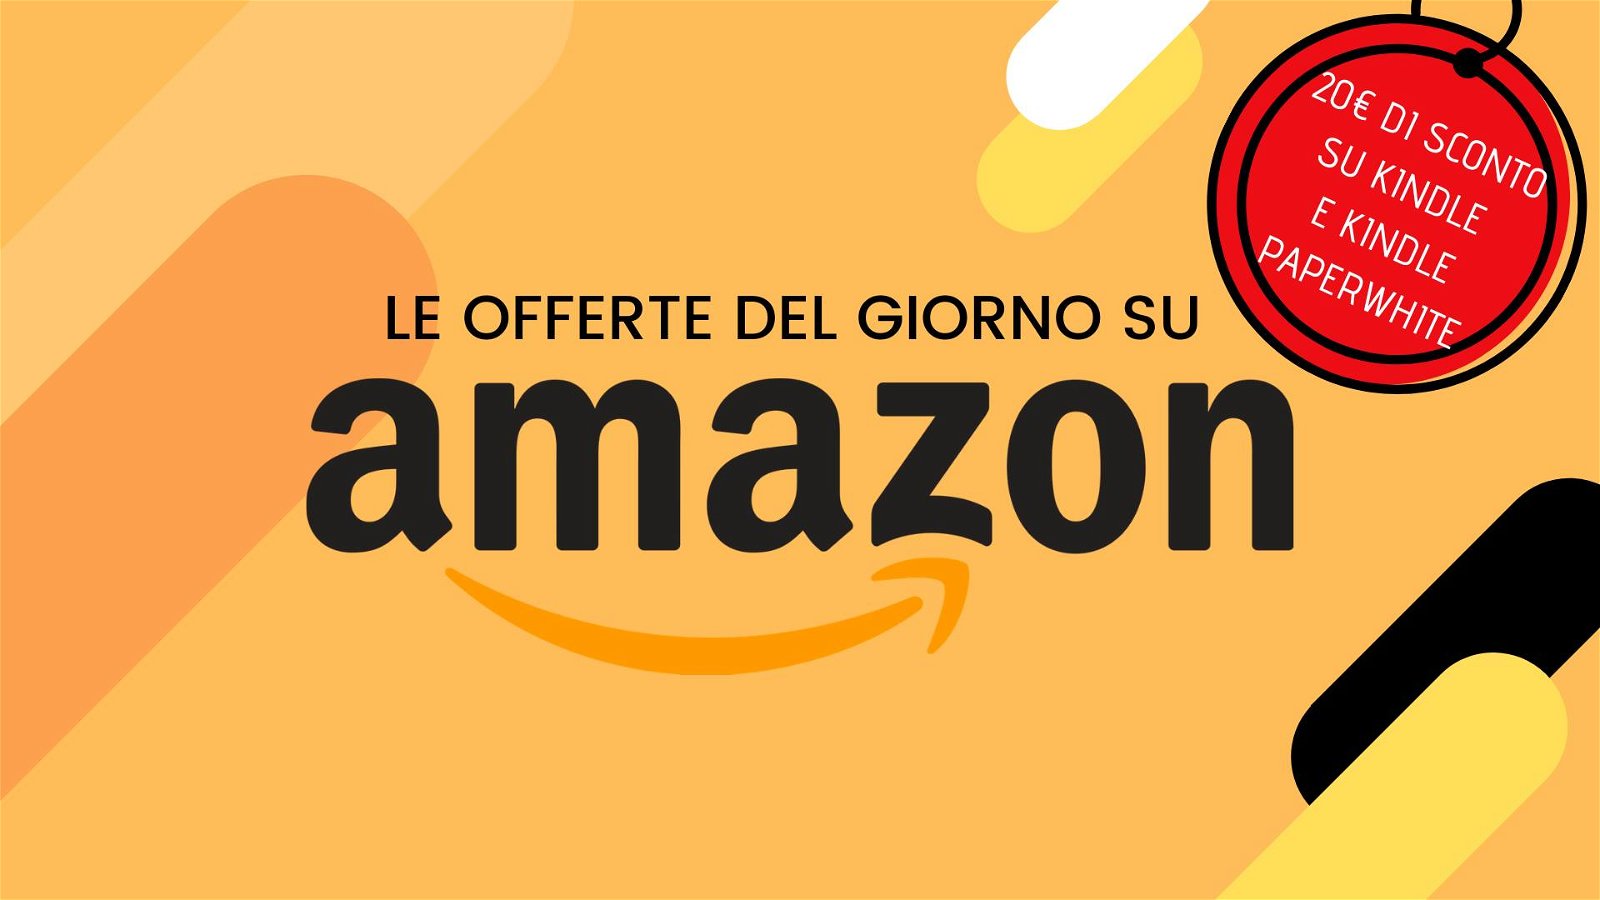 Immagine di Offerte del giorno Amazon: 20€ di sconto su Kindle e Kindle Paperwhite